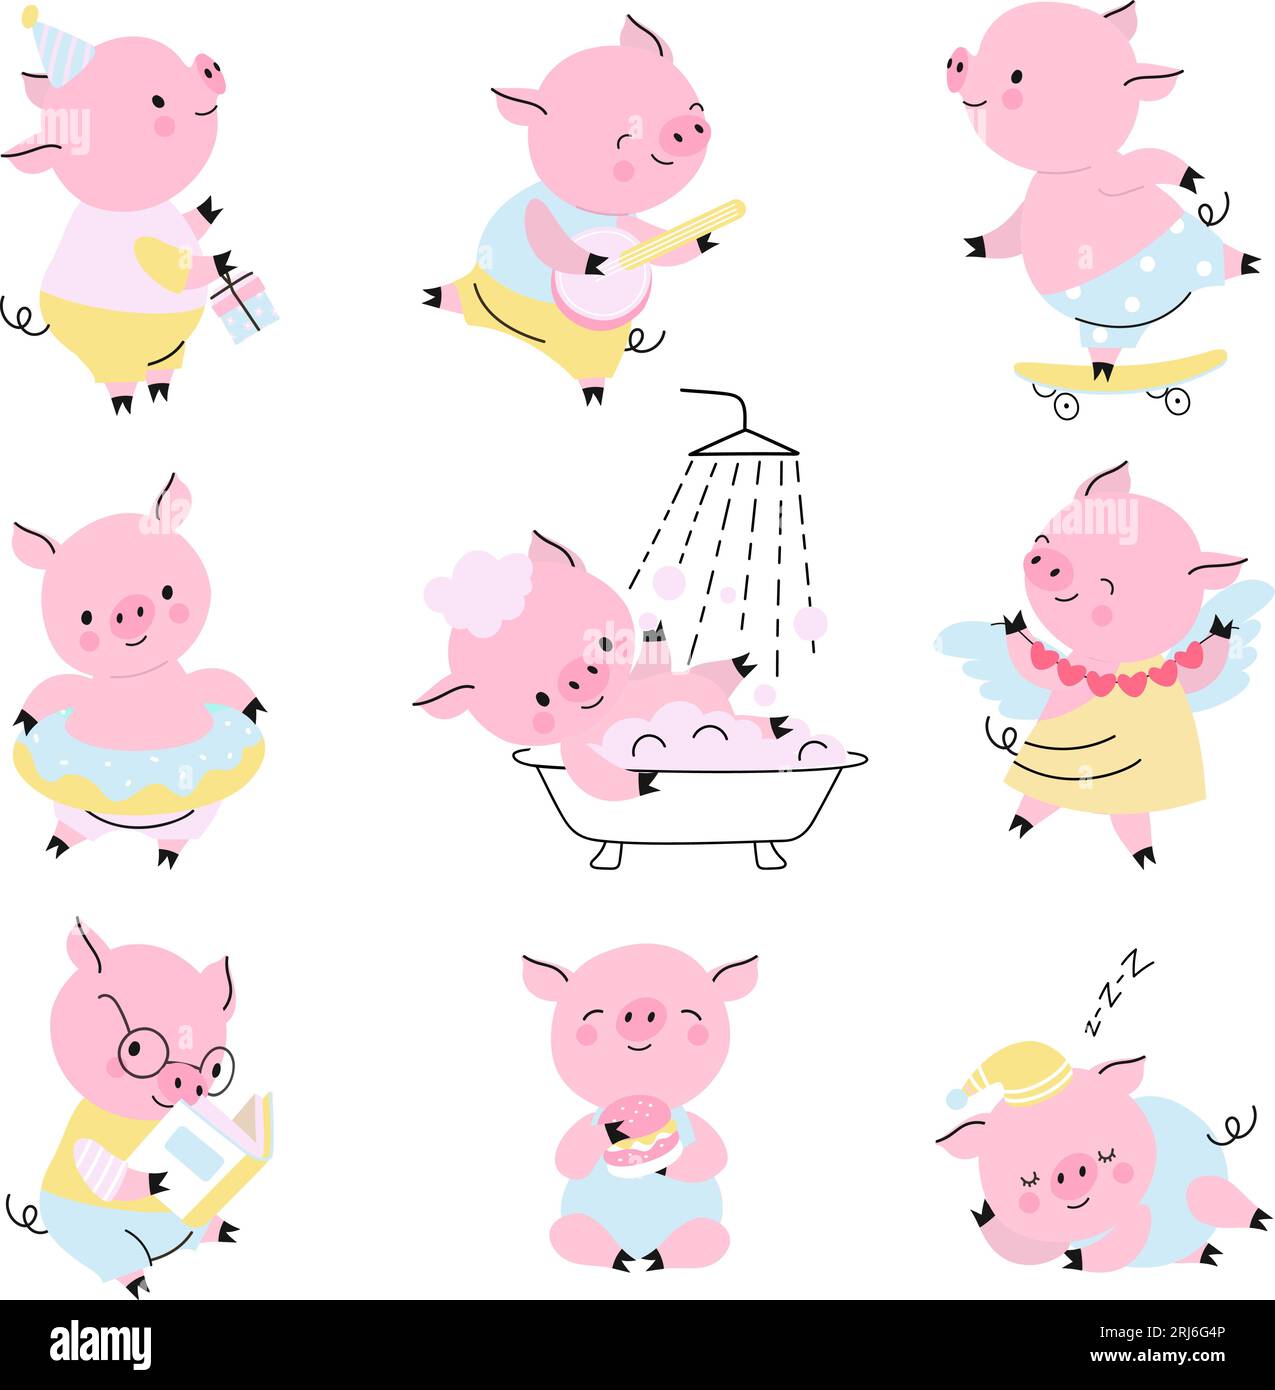 Niedliche Schweine, niedliche Aktivitäten. Schweinekartuschfiguren, lustige kindliche isolierte Farmtiere in verschiedenen Stellungen, Lesen, tanzendes Nowaday-Vektorset Stock Vektor